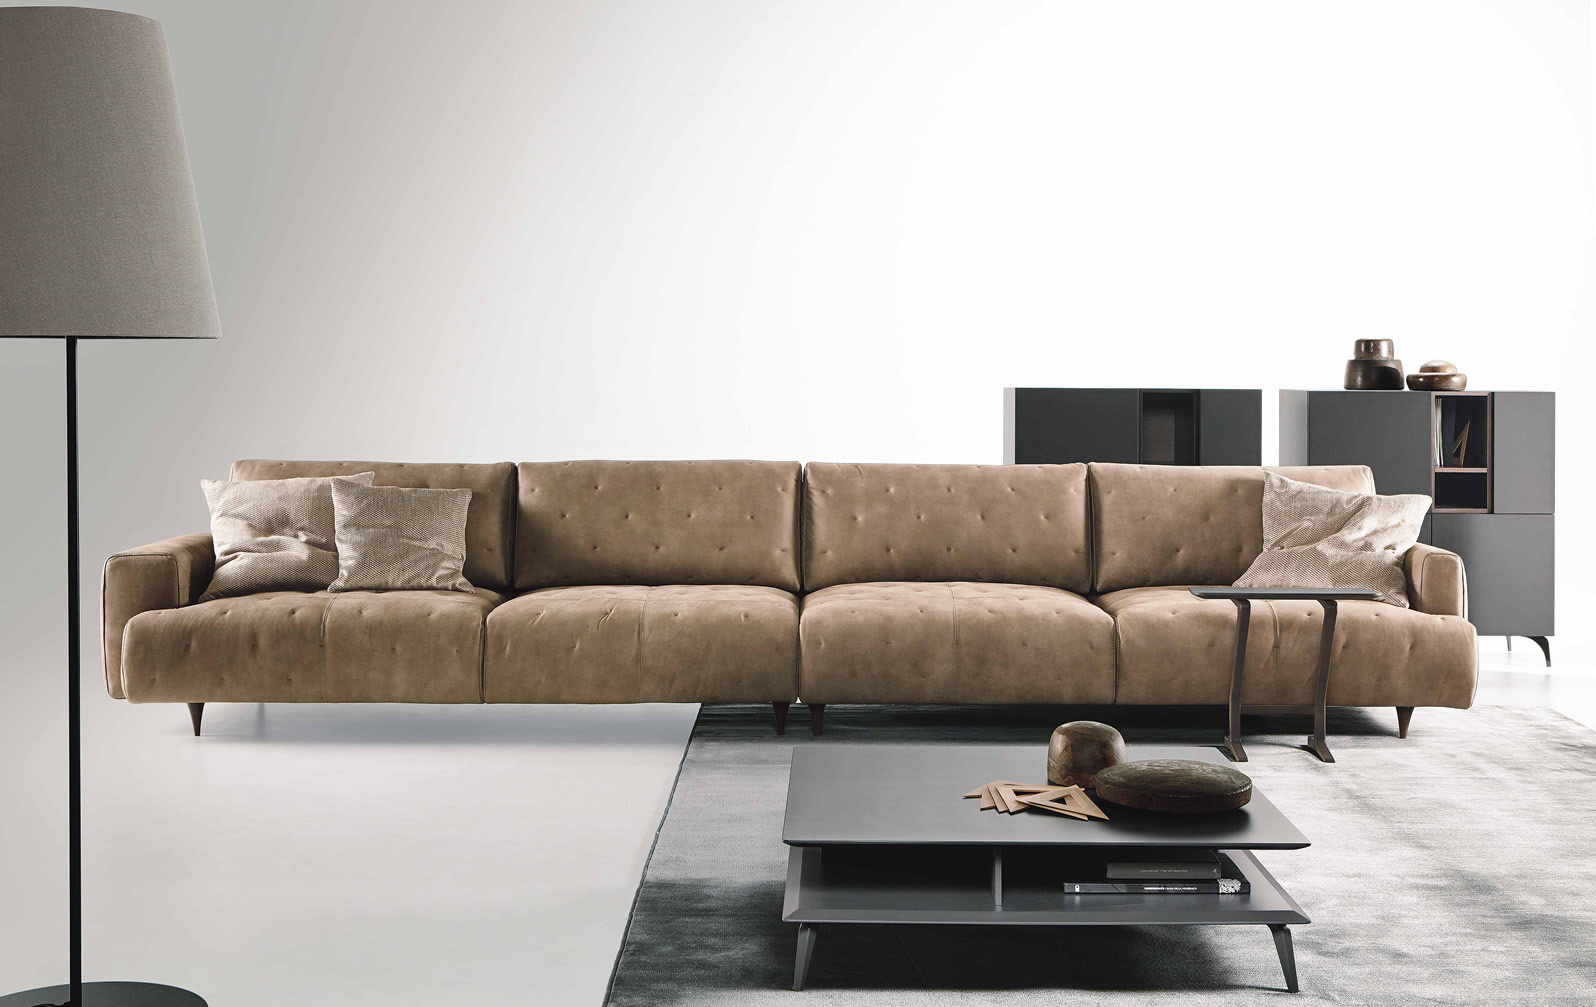 Mua sofa da thật, đẹp và giá hợp lý nhất ở đâu?